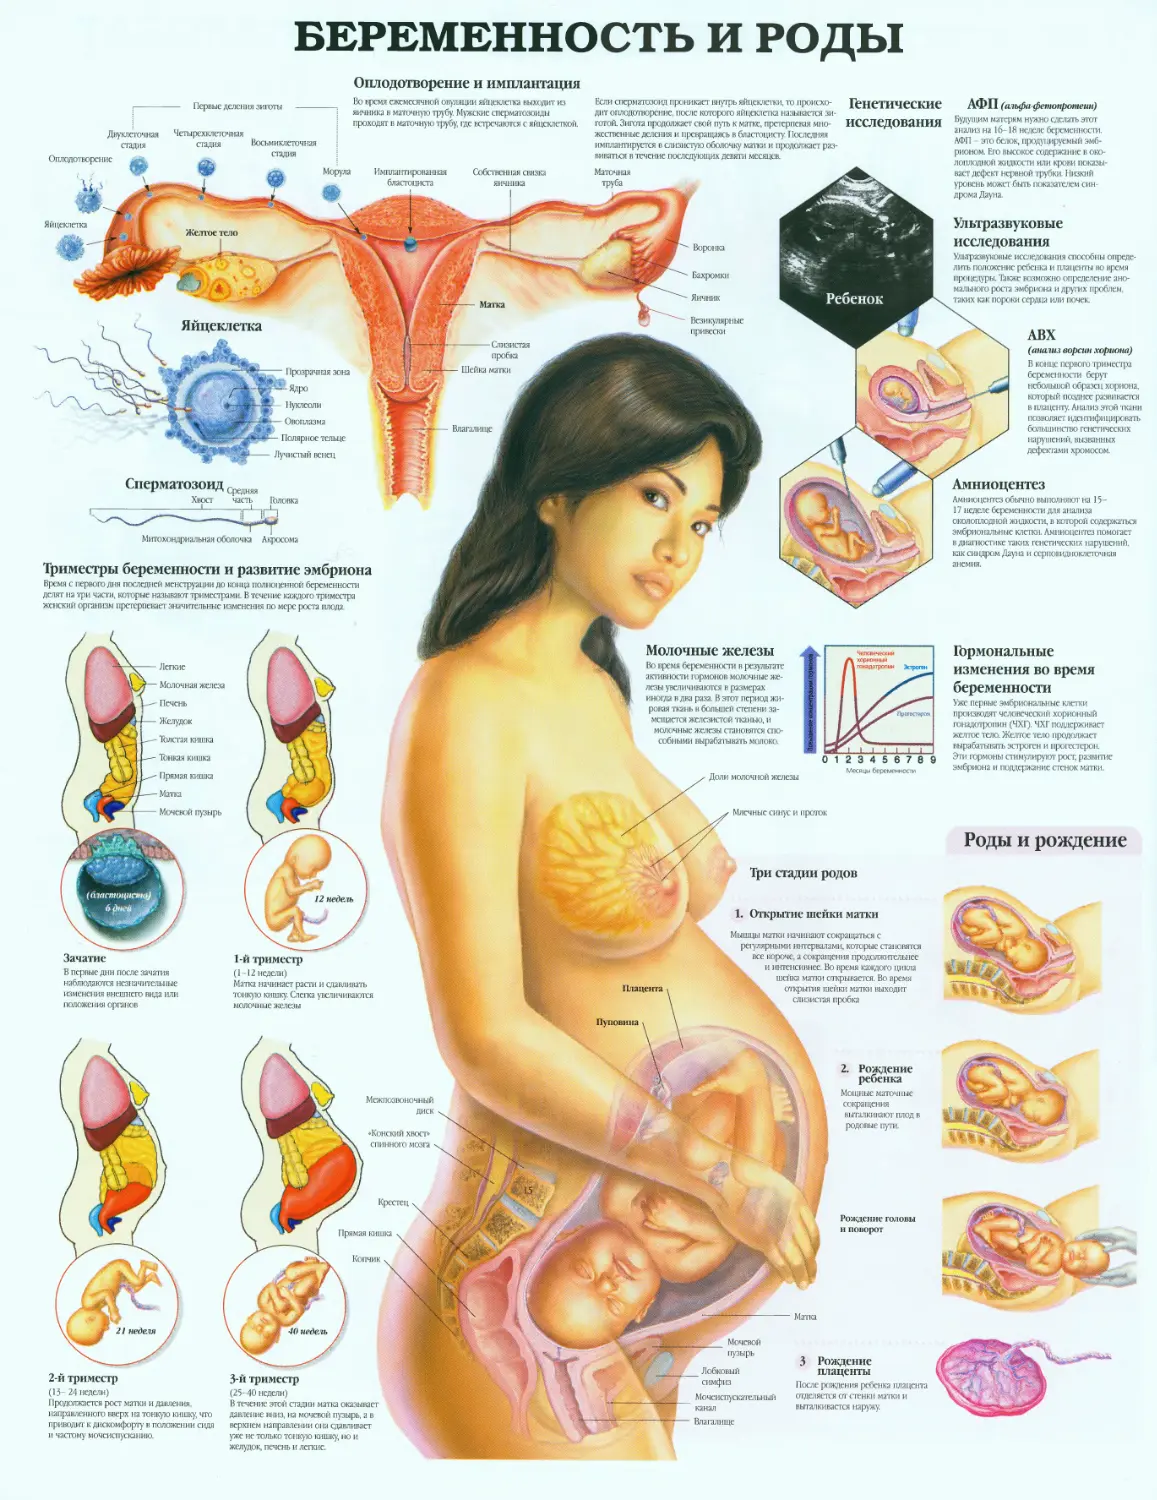 37.беременность и роды